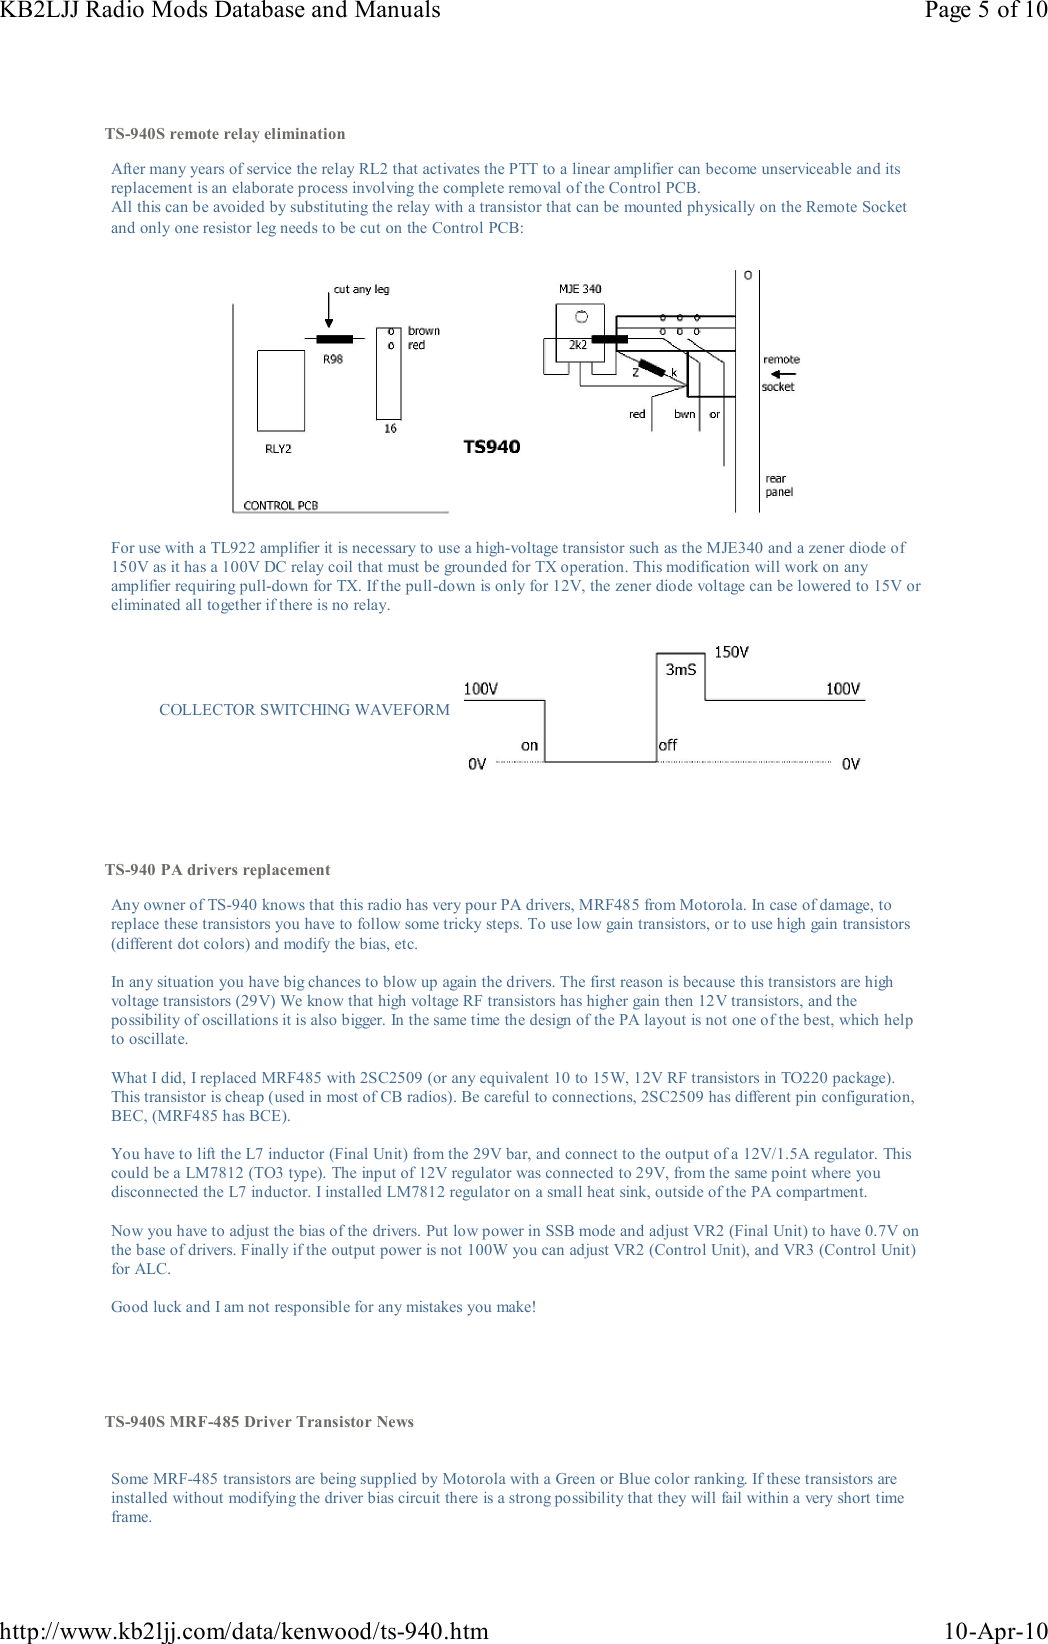 Page 5 of 10 - KENWOOD--TS-940S-MODIFS